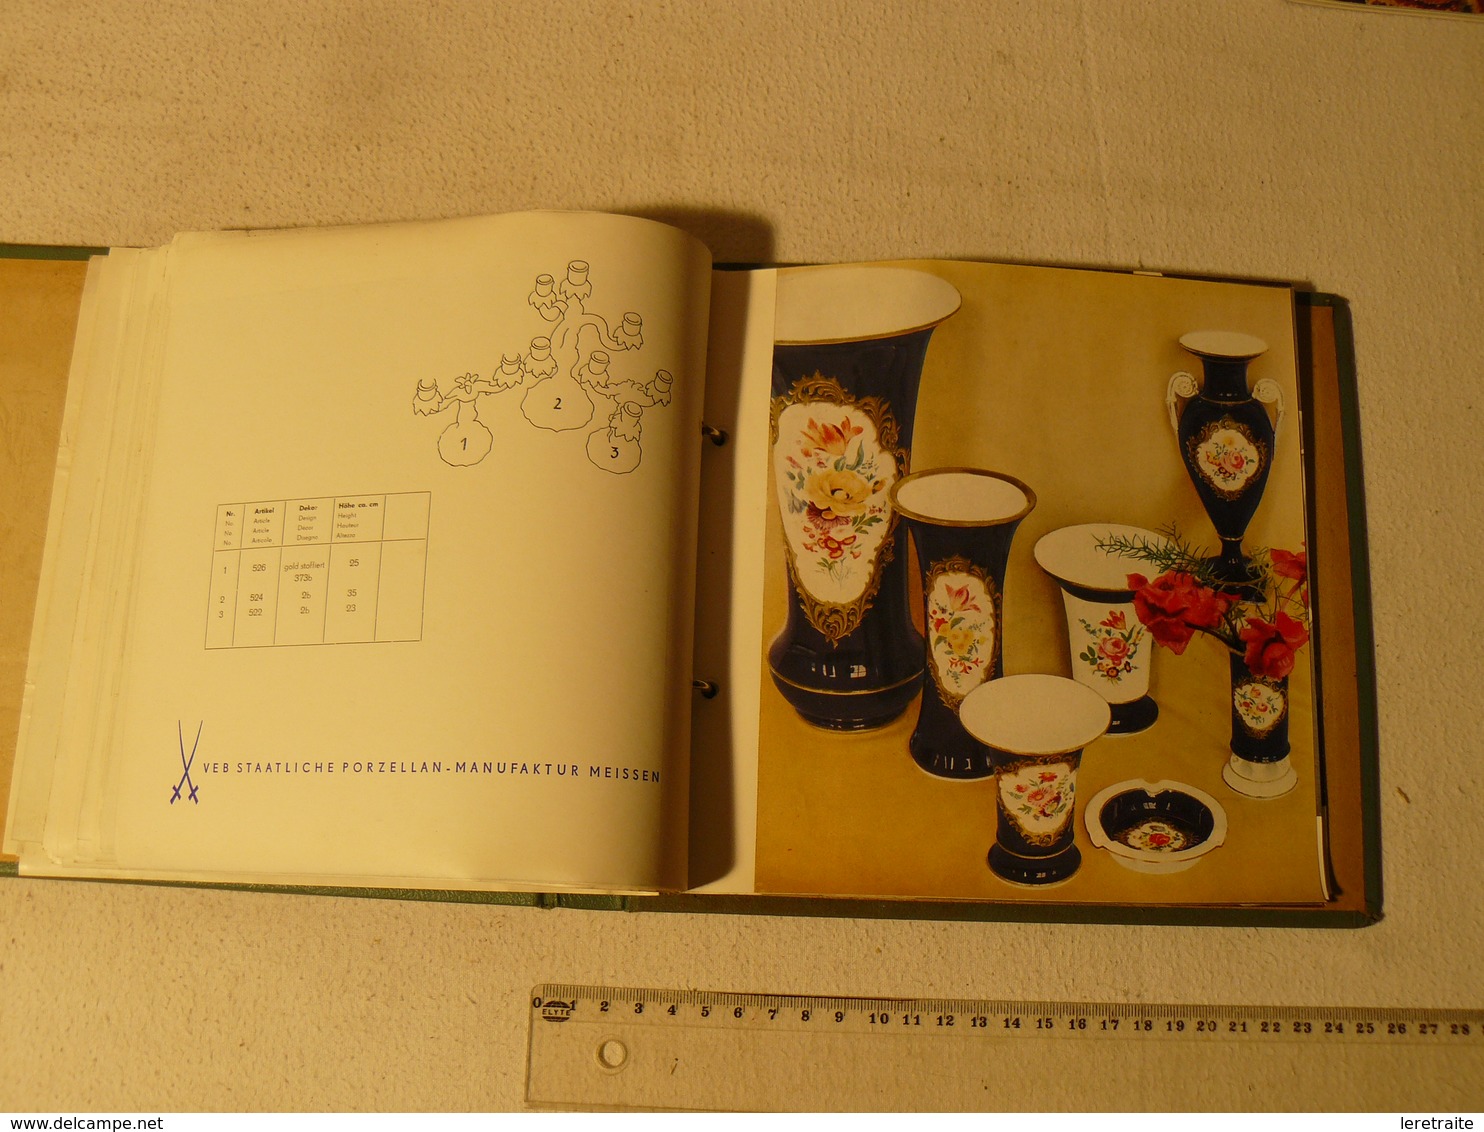 Catalogue de la manufacture de porcelaine de Meissen. 48 planches. vers les années 1950/60.